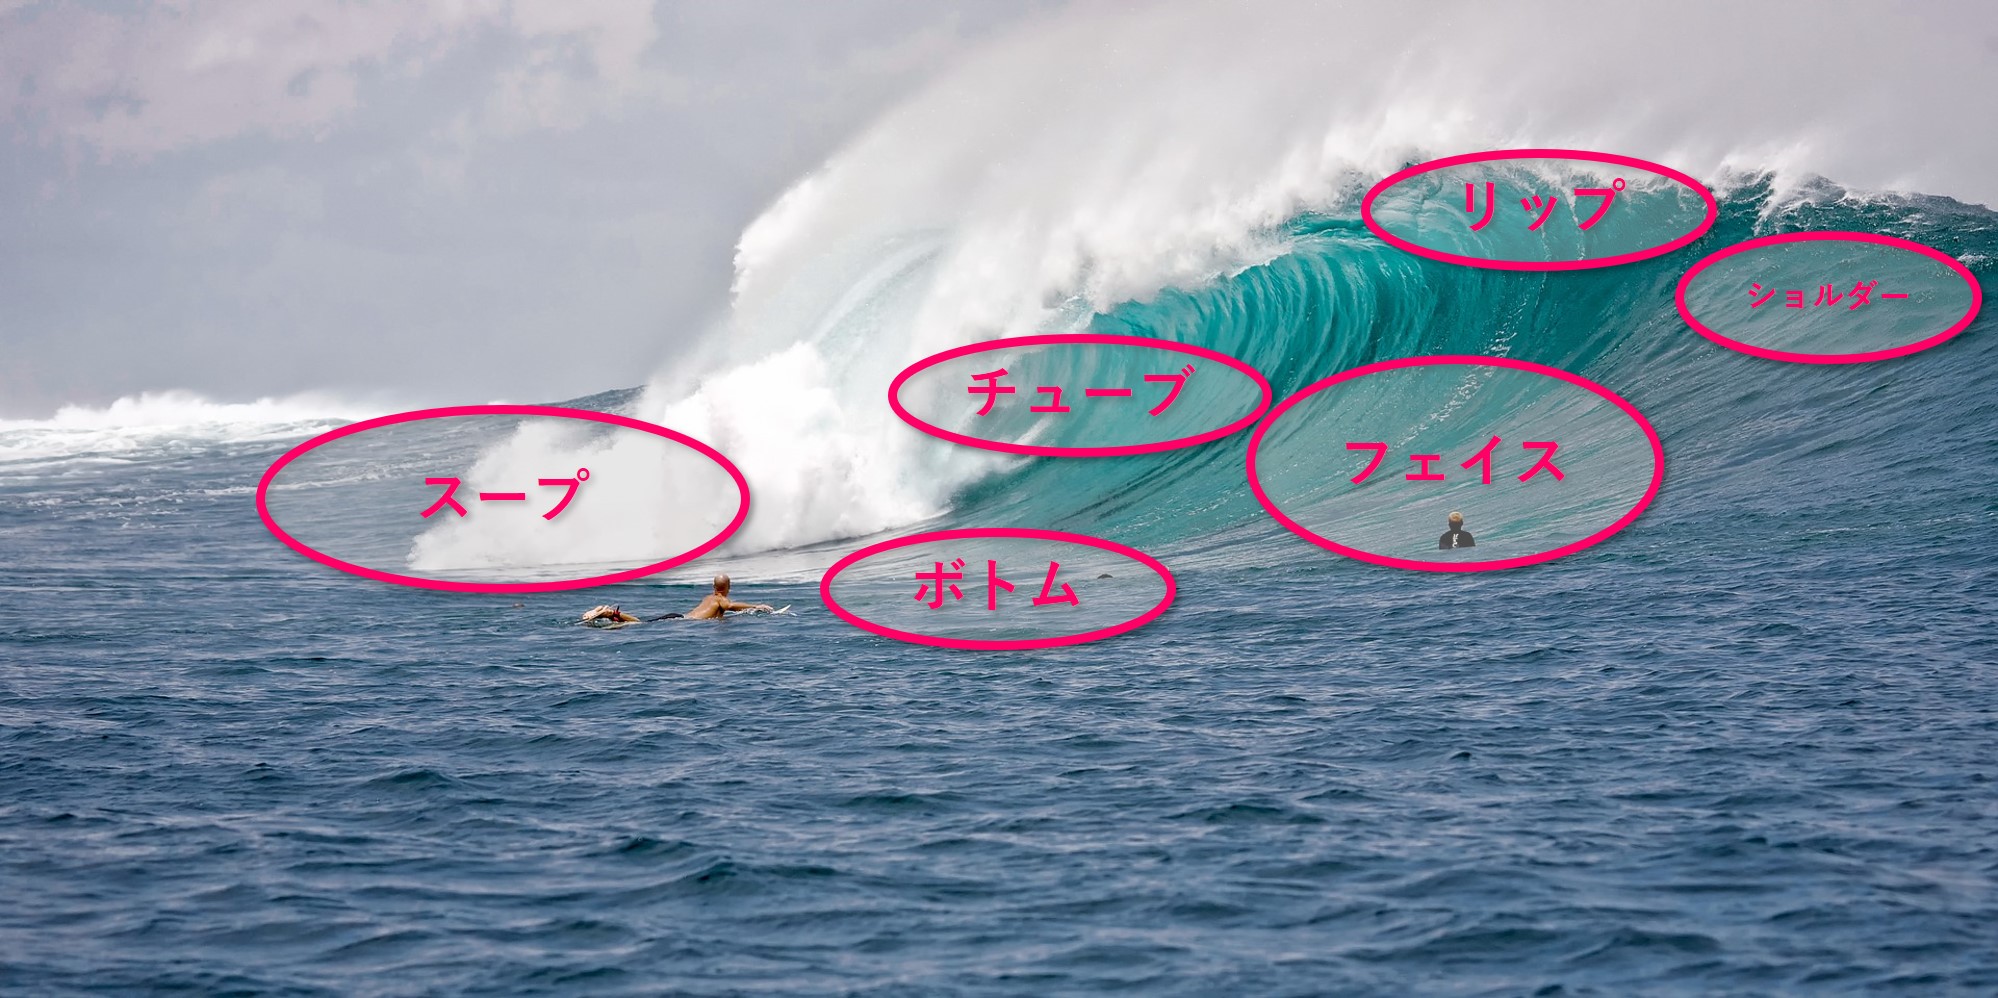 サーフィンの基本 波の各部位の名称を覚えよう Surfeee Lab サーフィンを科学する